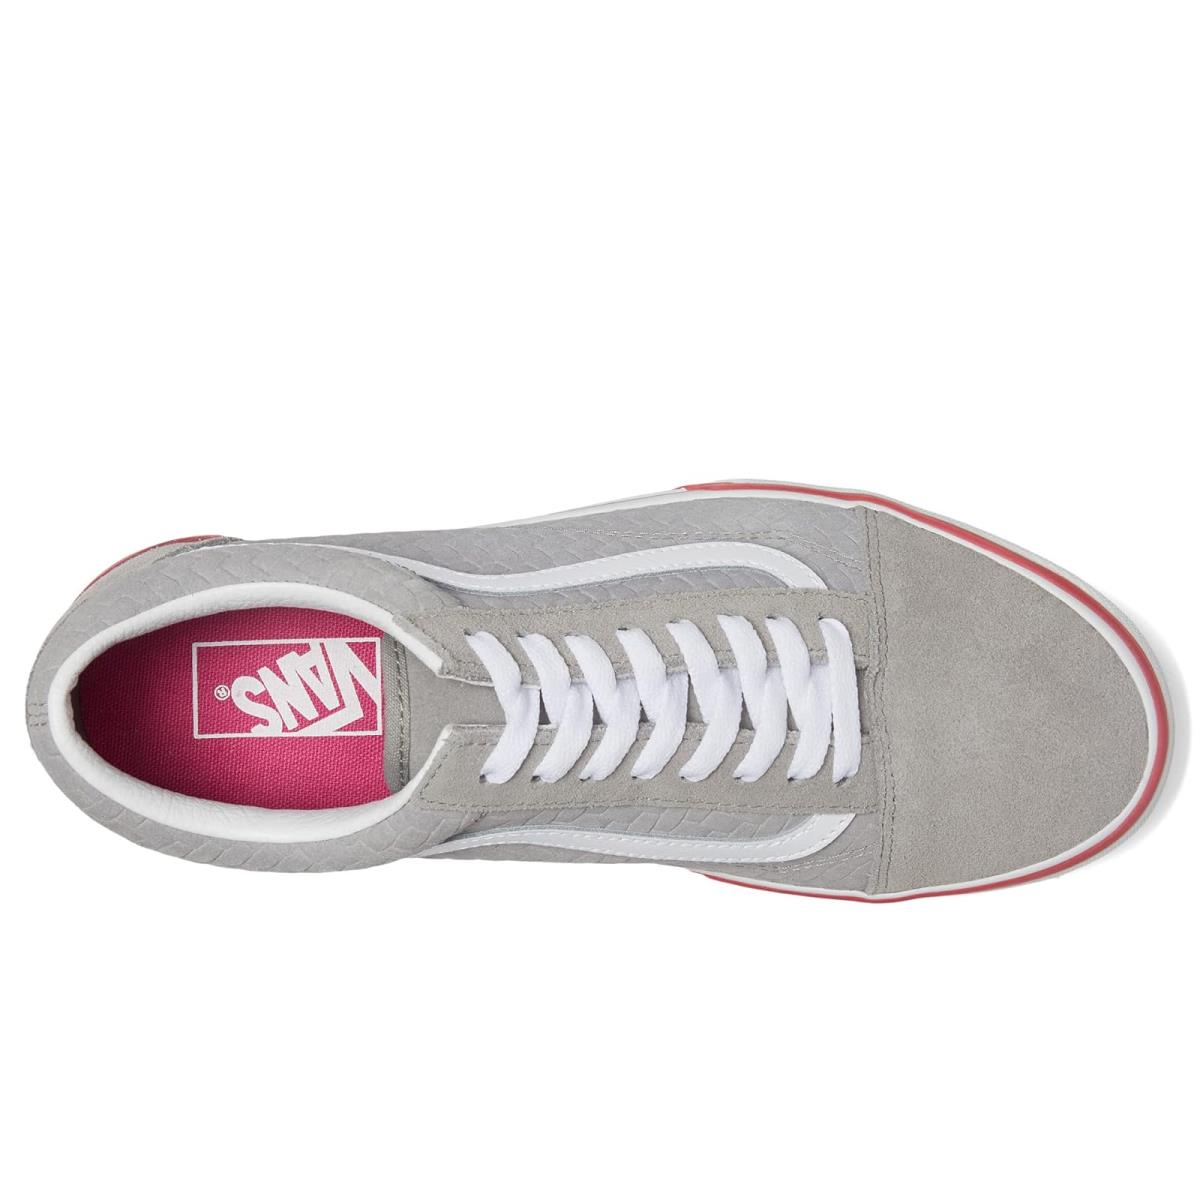 Unisex Sneakers Athletic Shoes Vans Old Skool Stacked - Suede Emboss Grey/Pink